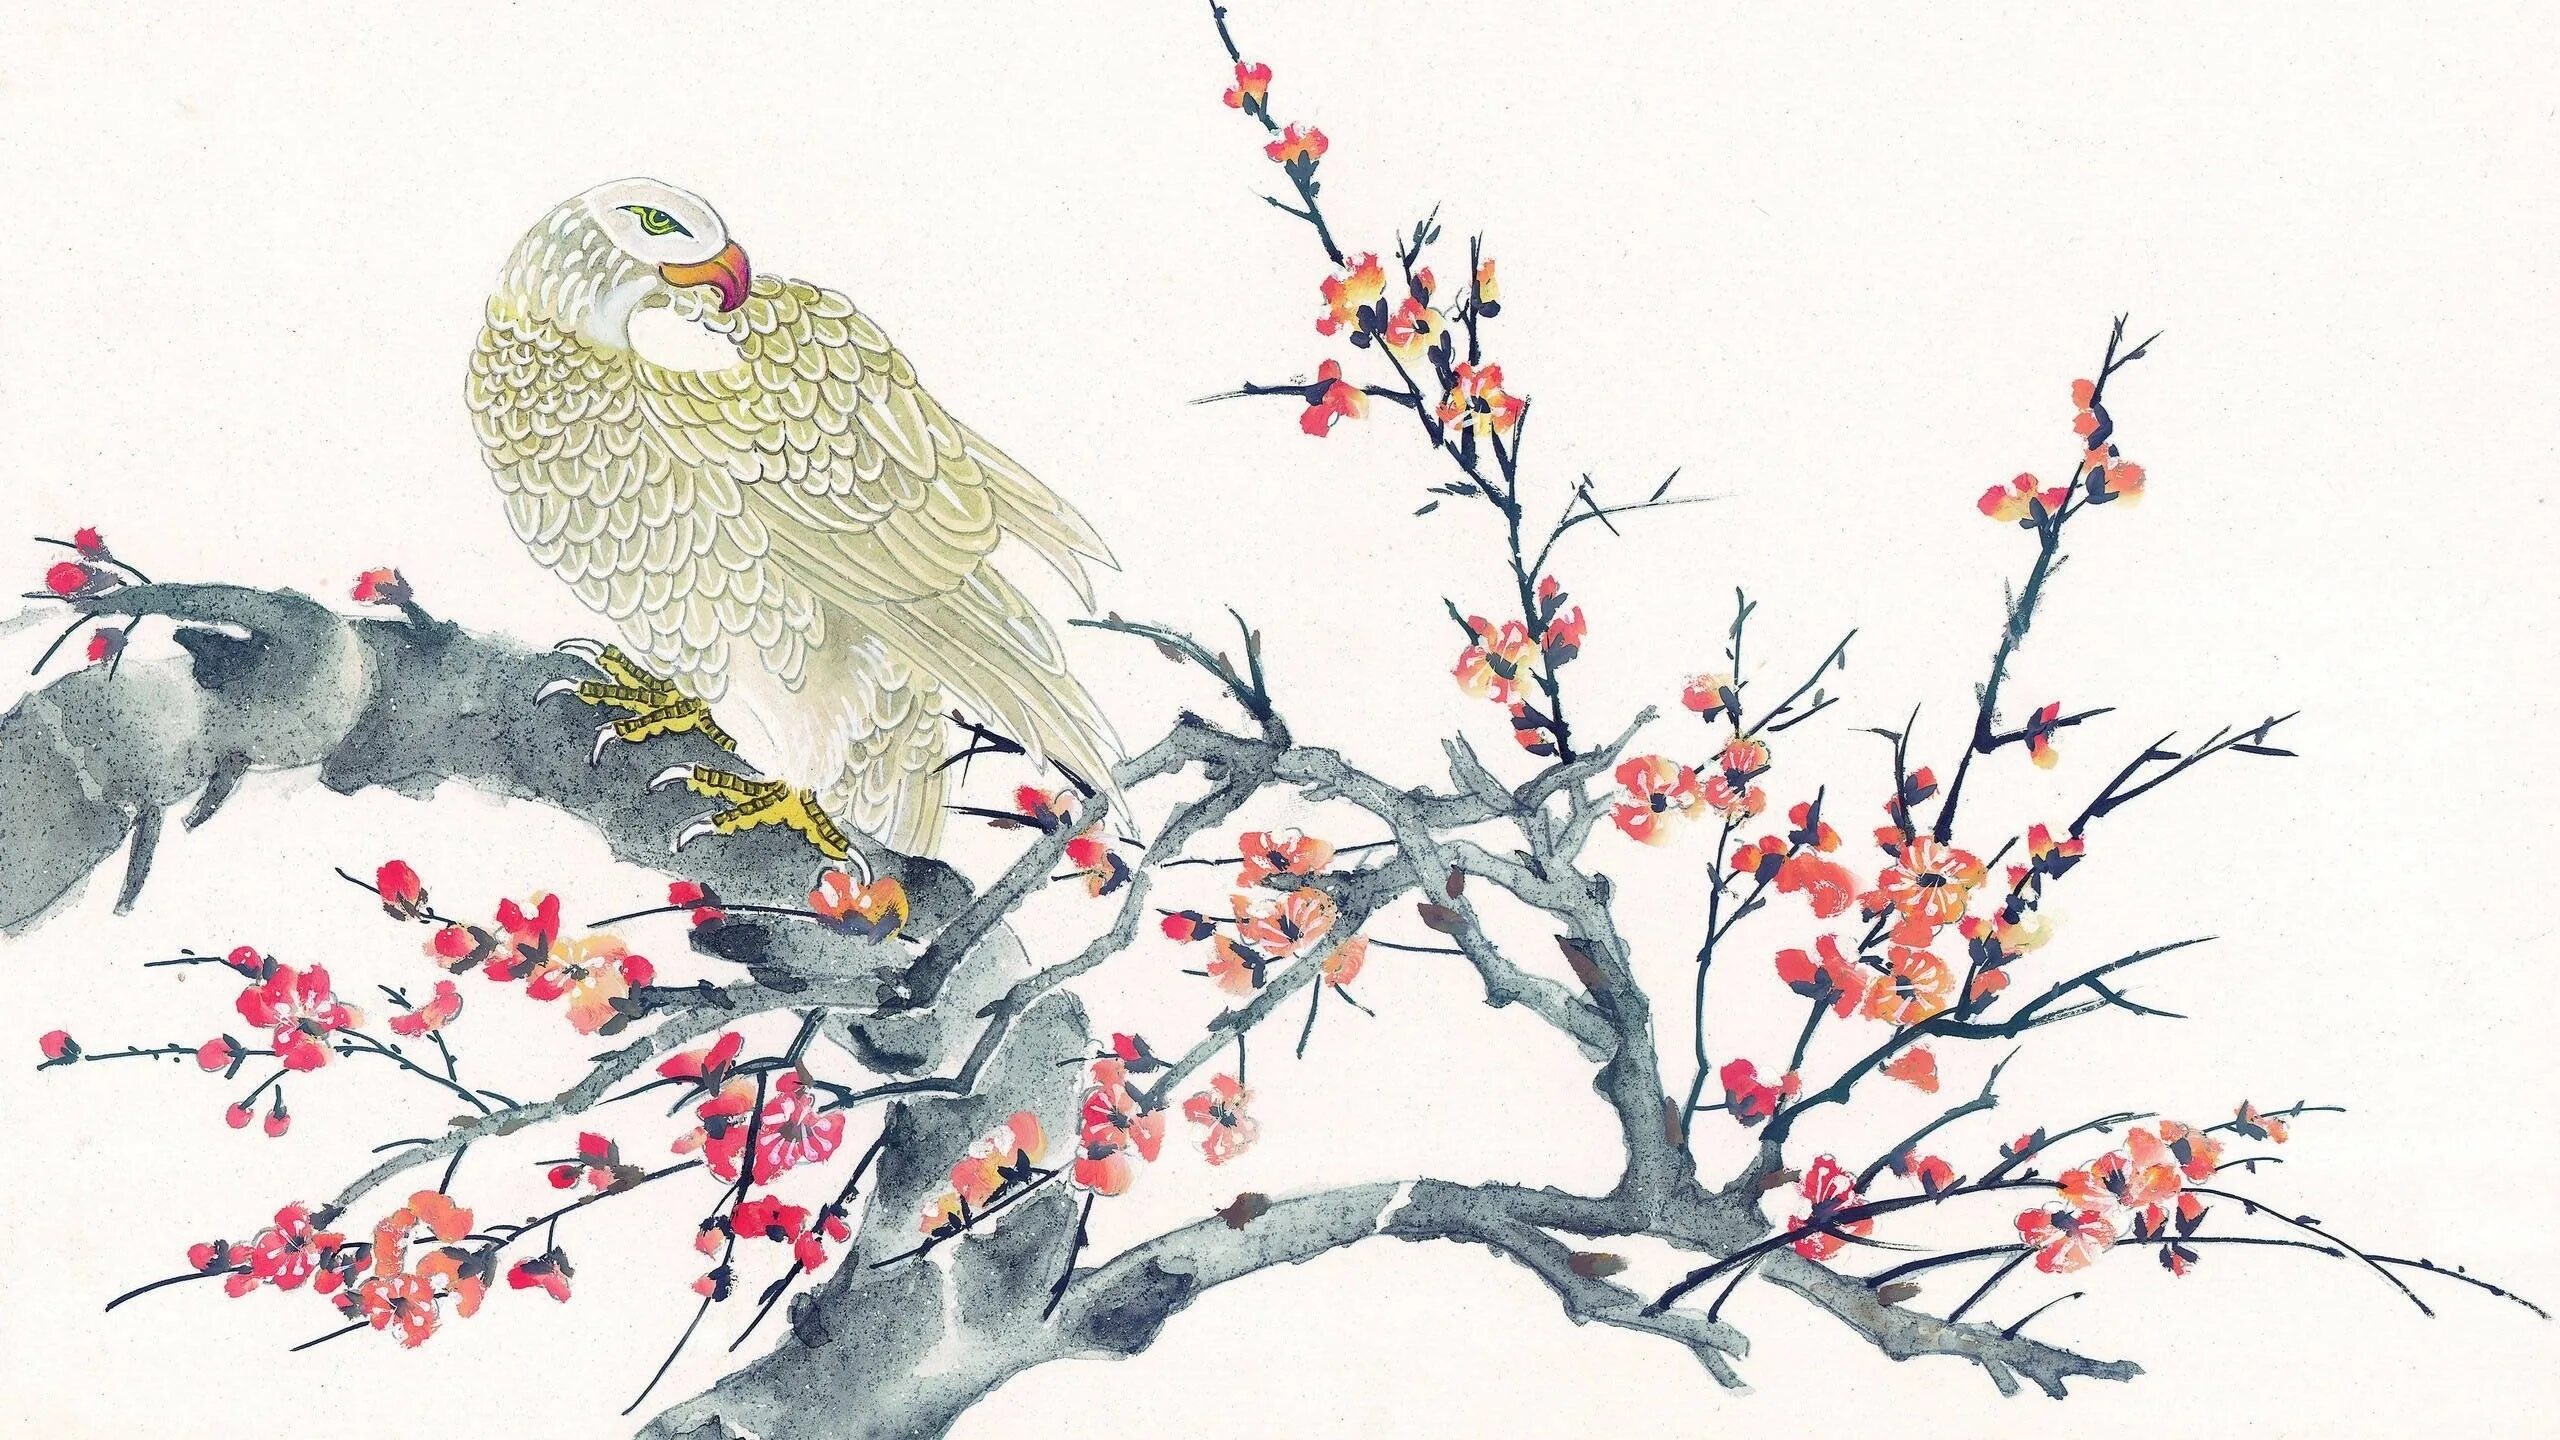 Китайская живопись Хуа Няо. Чжэнь-Няо птица. Китайские мотивы в живописи. Японская живопись.